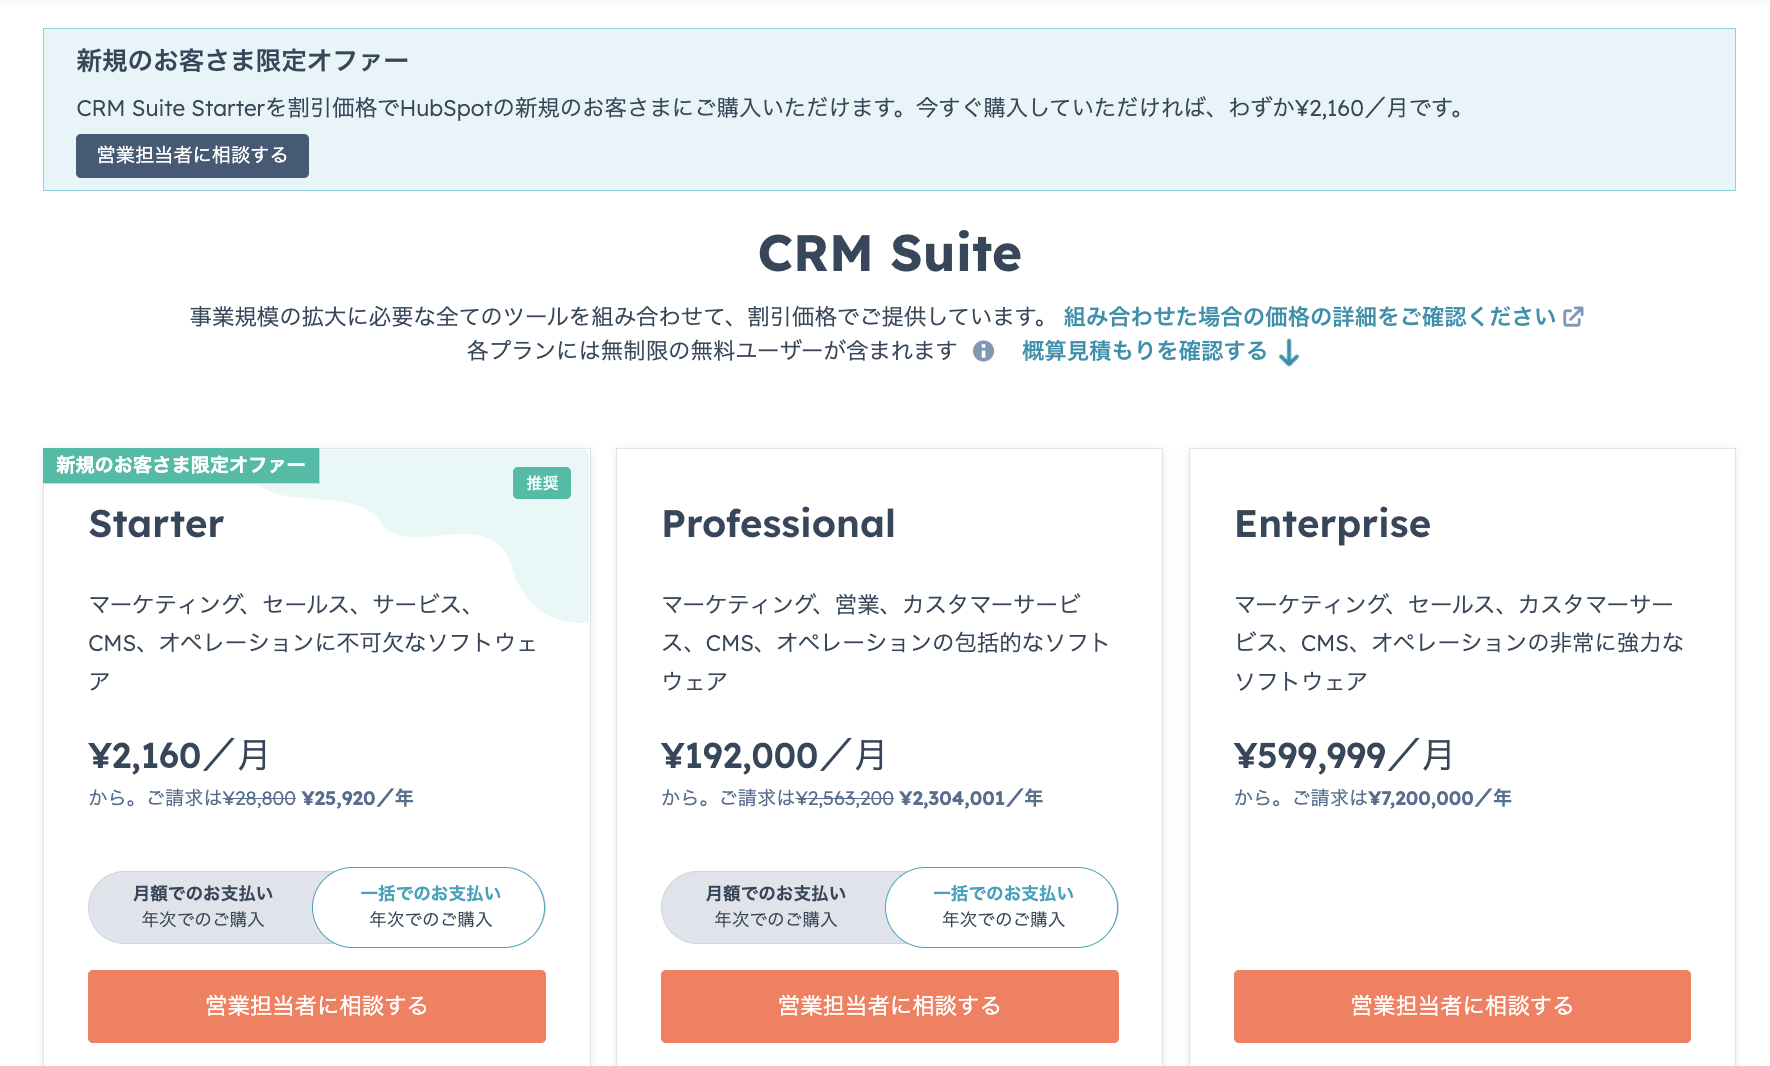 HubSpot CRM Suite